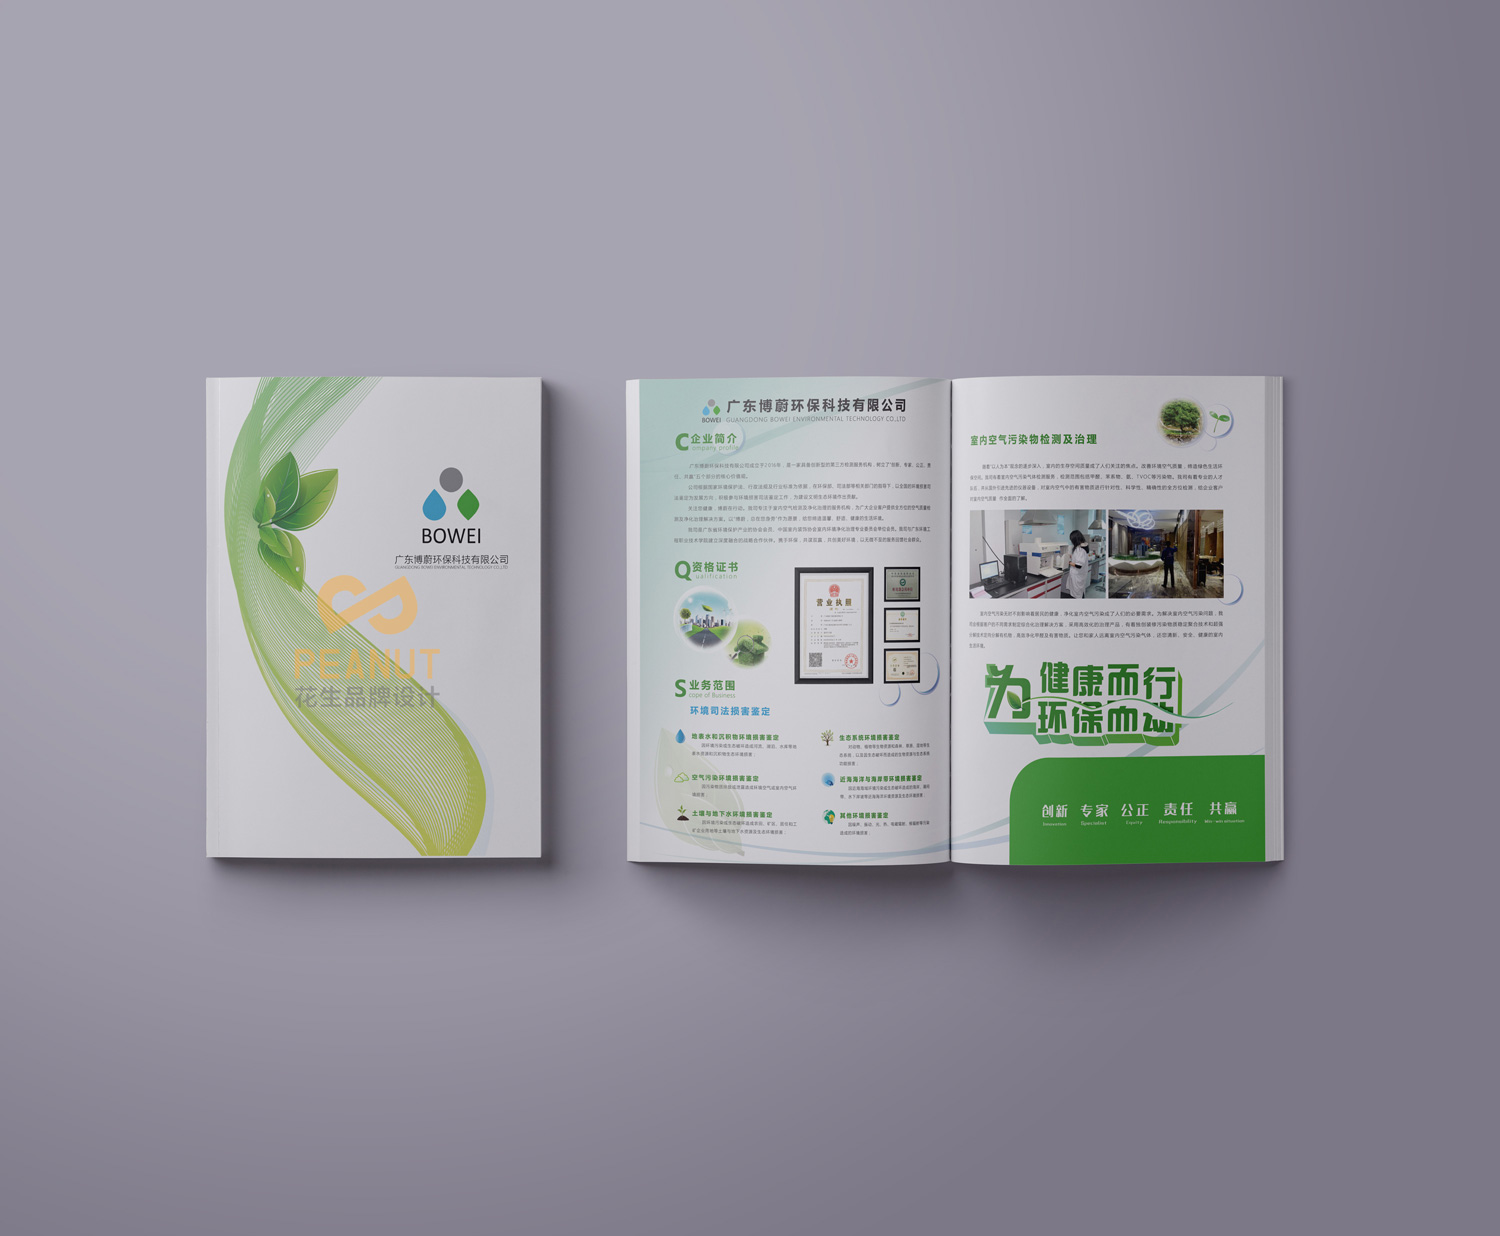 环保企业画册设计如何突出环保的理念 